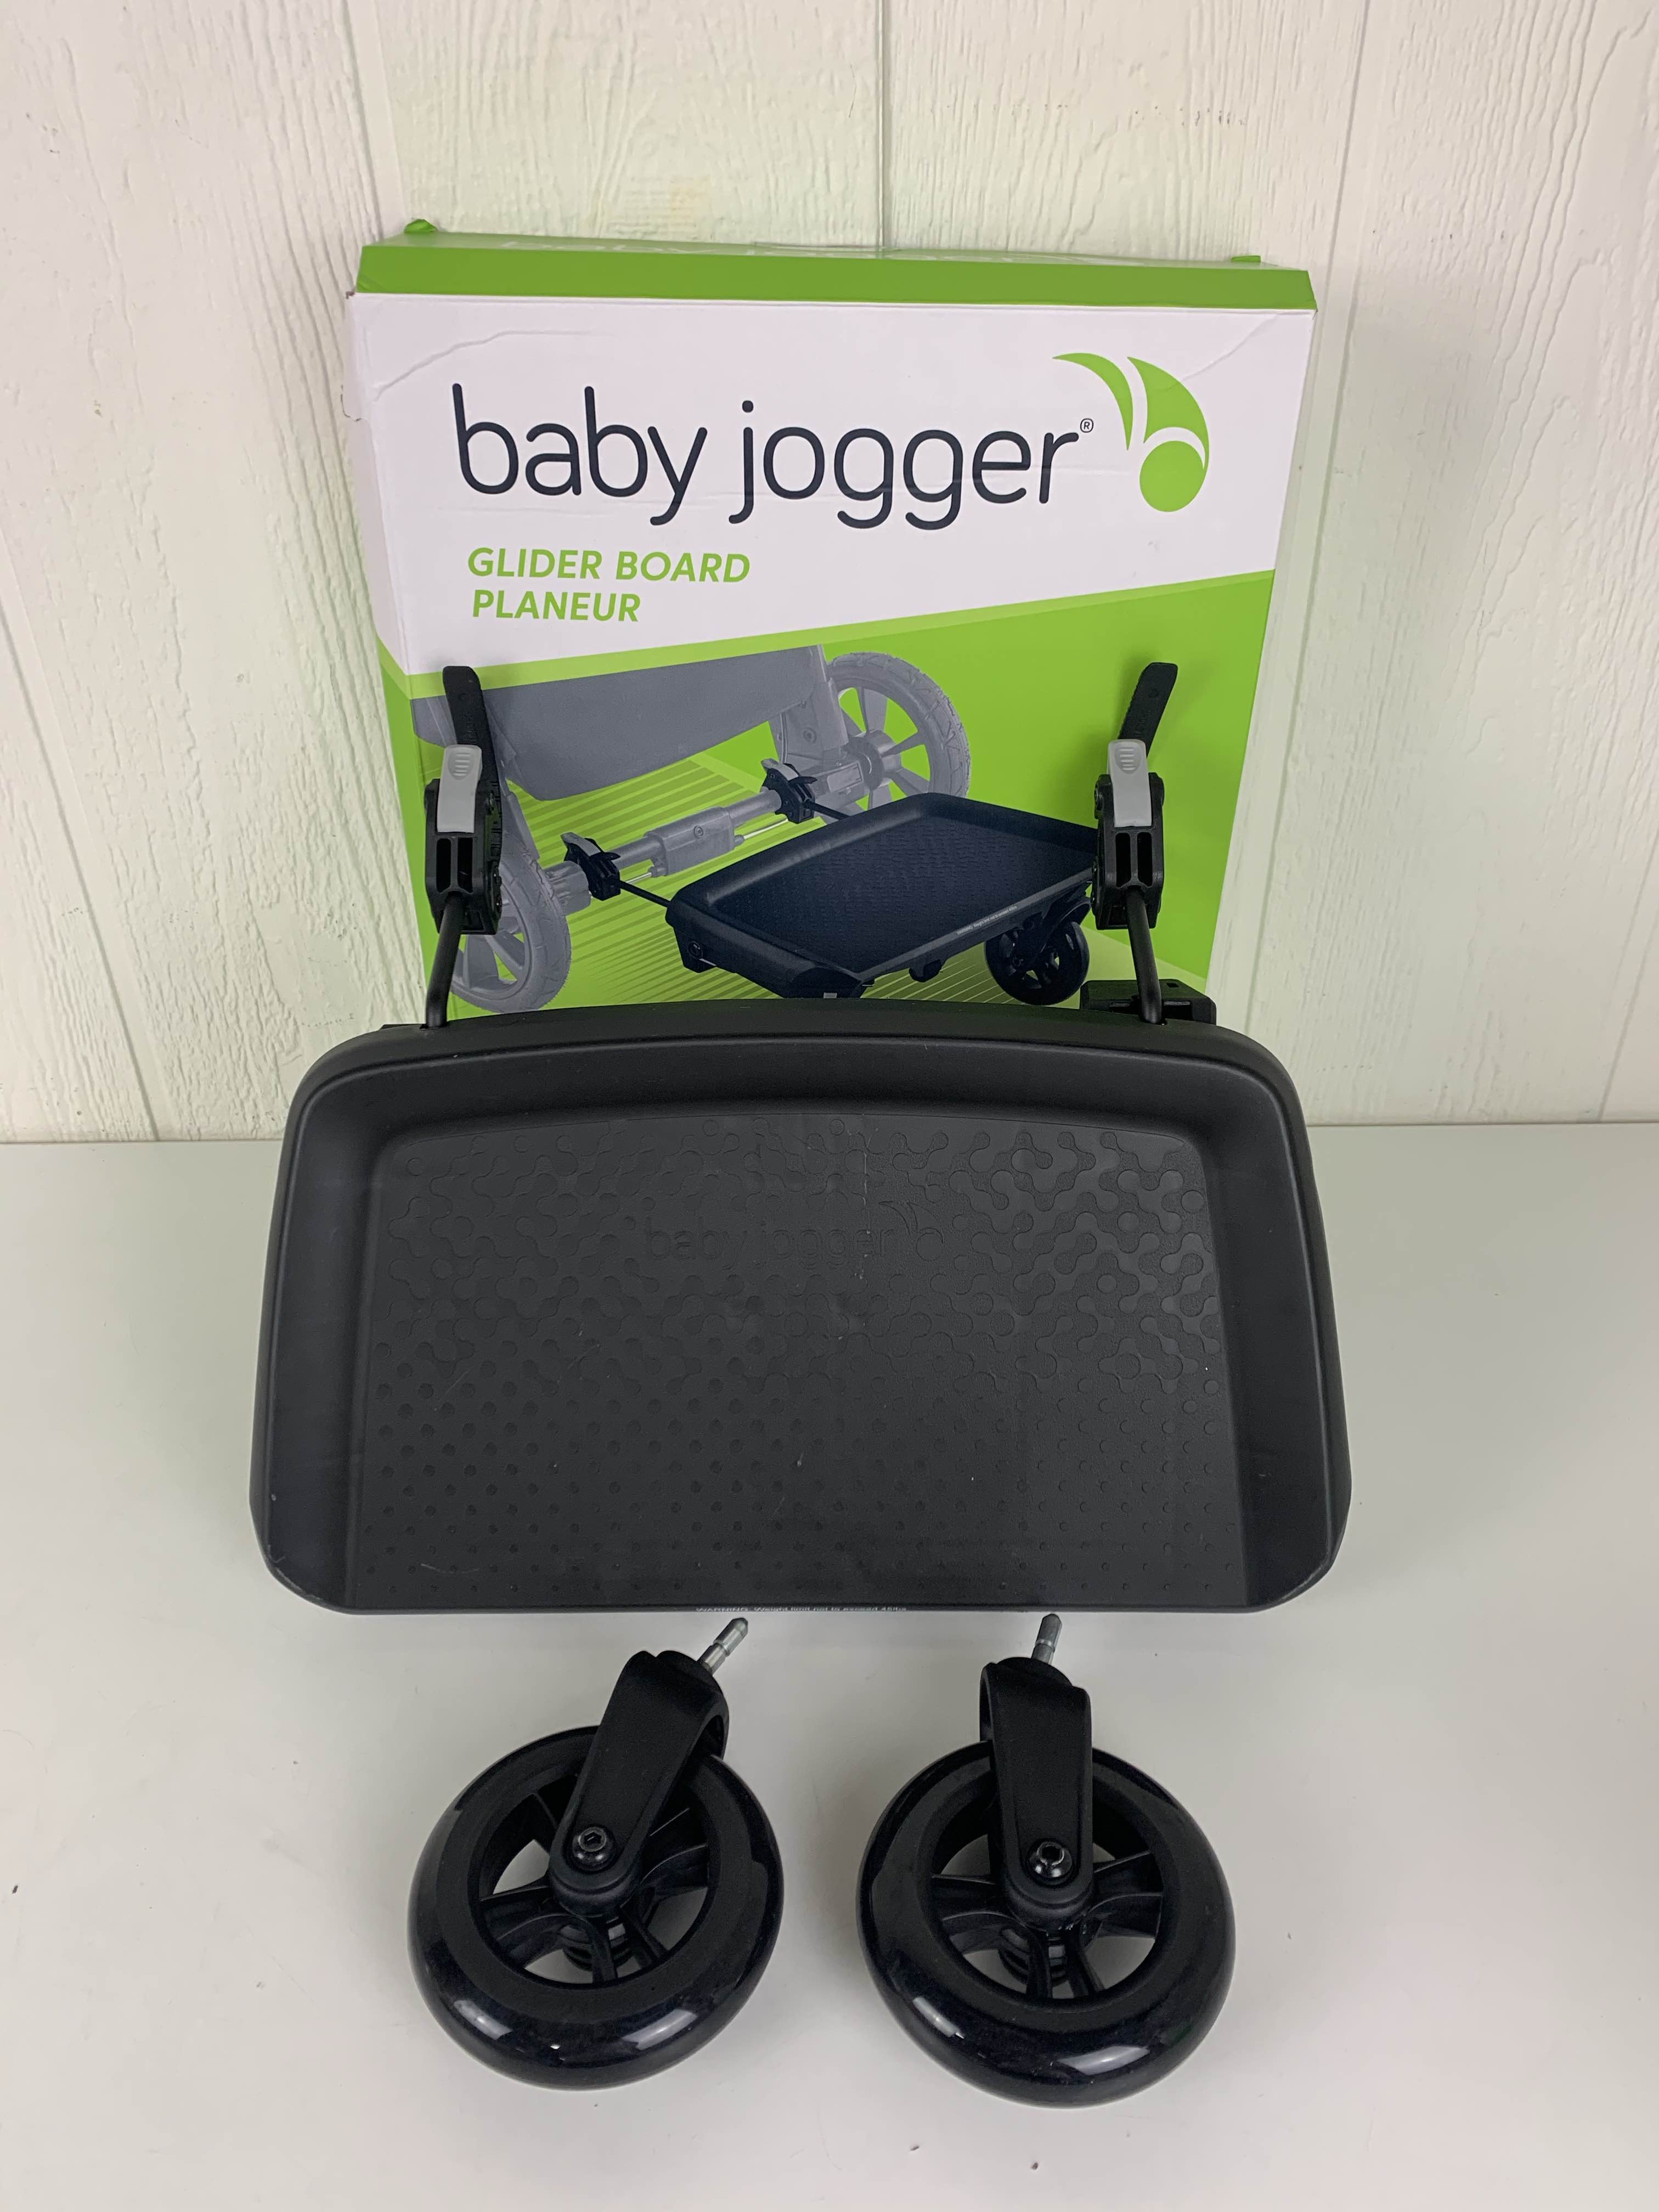 baby jogger glider board sale